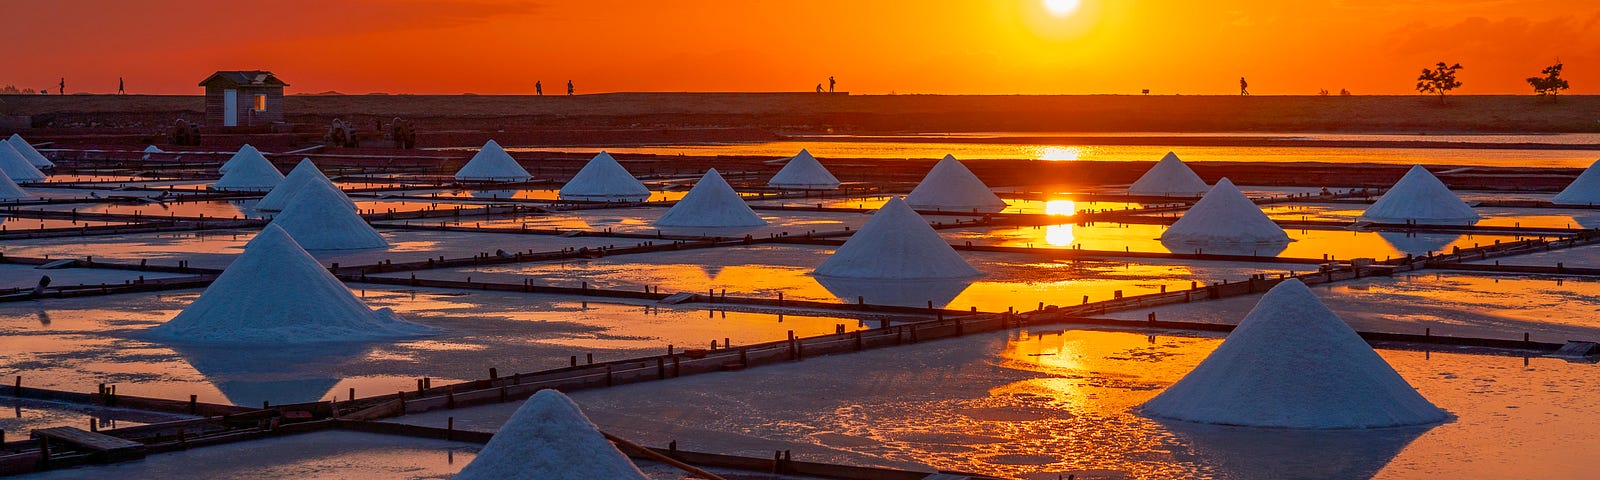 piles of salt at sunset